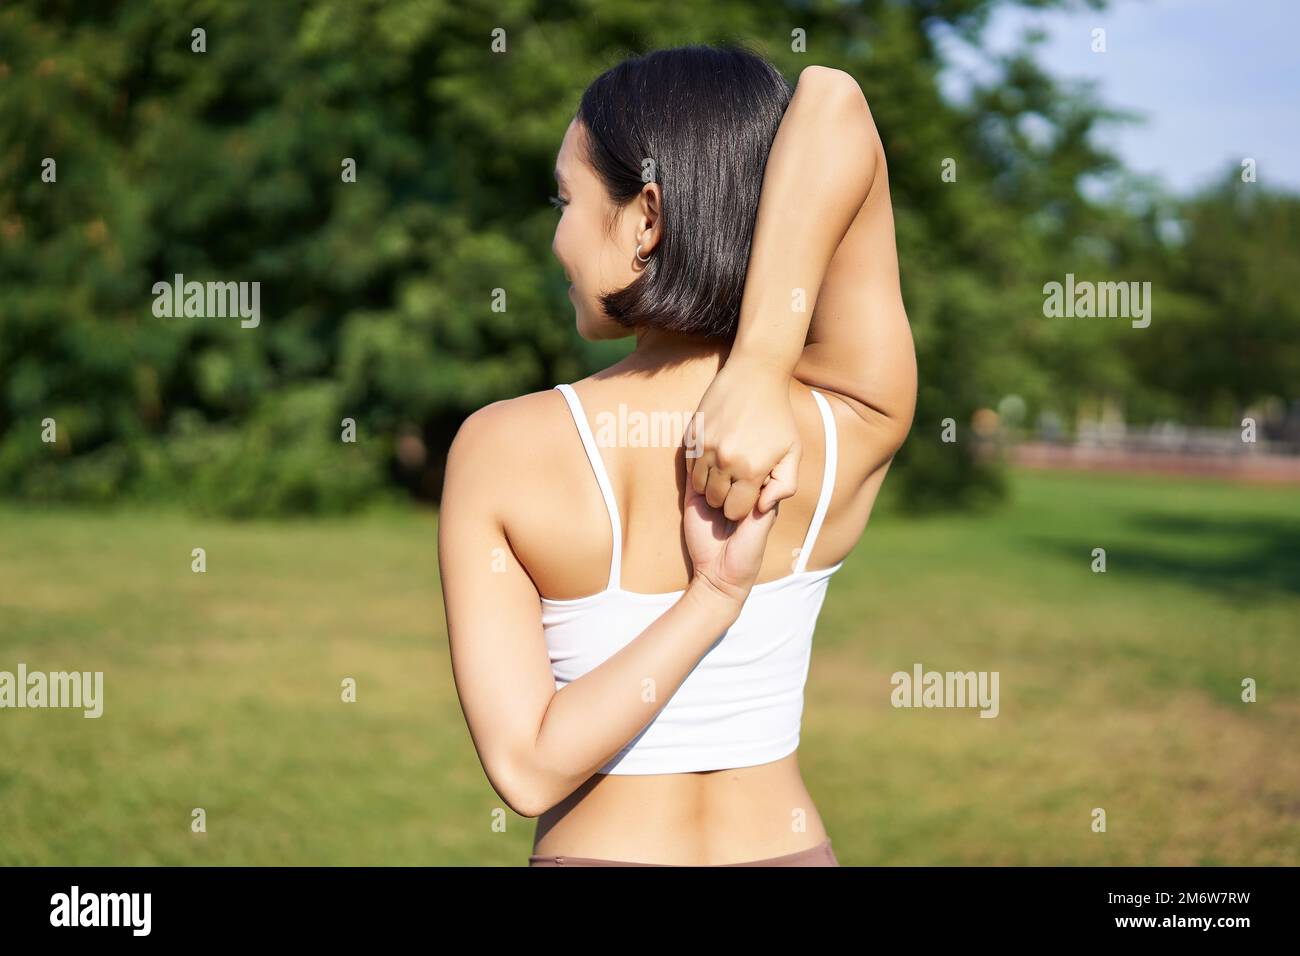 Vue arrière d'une jeune femme sportive qui étire les bras derrière le dos, échauffement, préparation pour l'entraînement au jogging, événement sportif dans le parc Banque D'Images